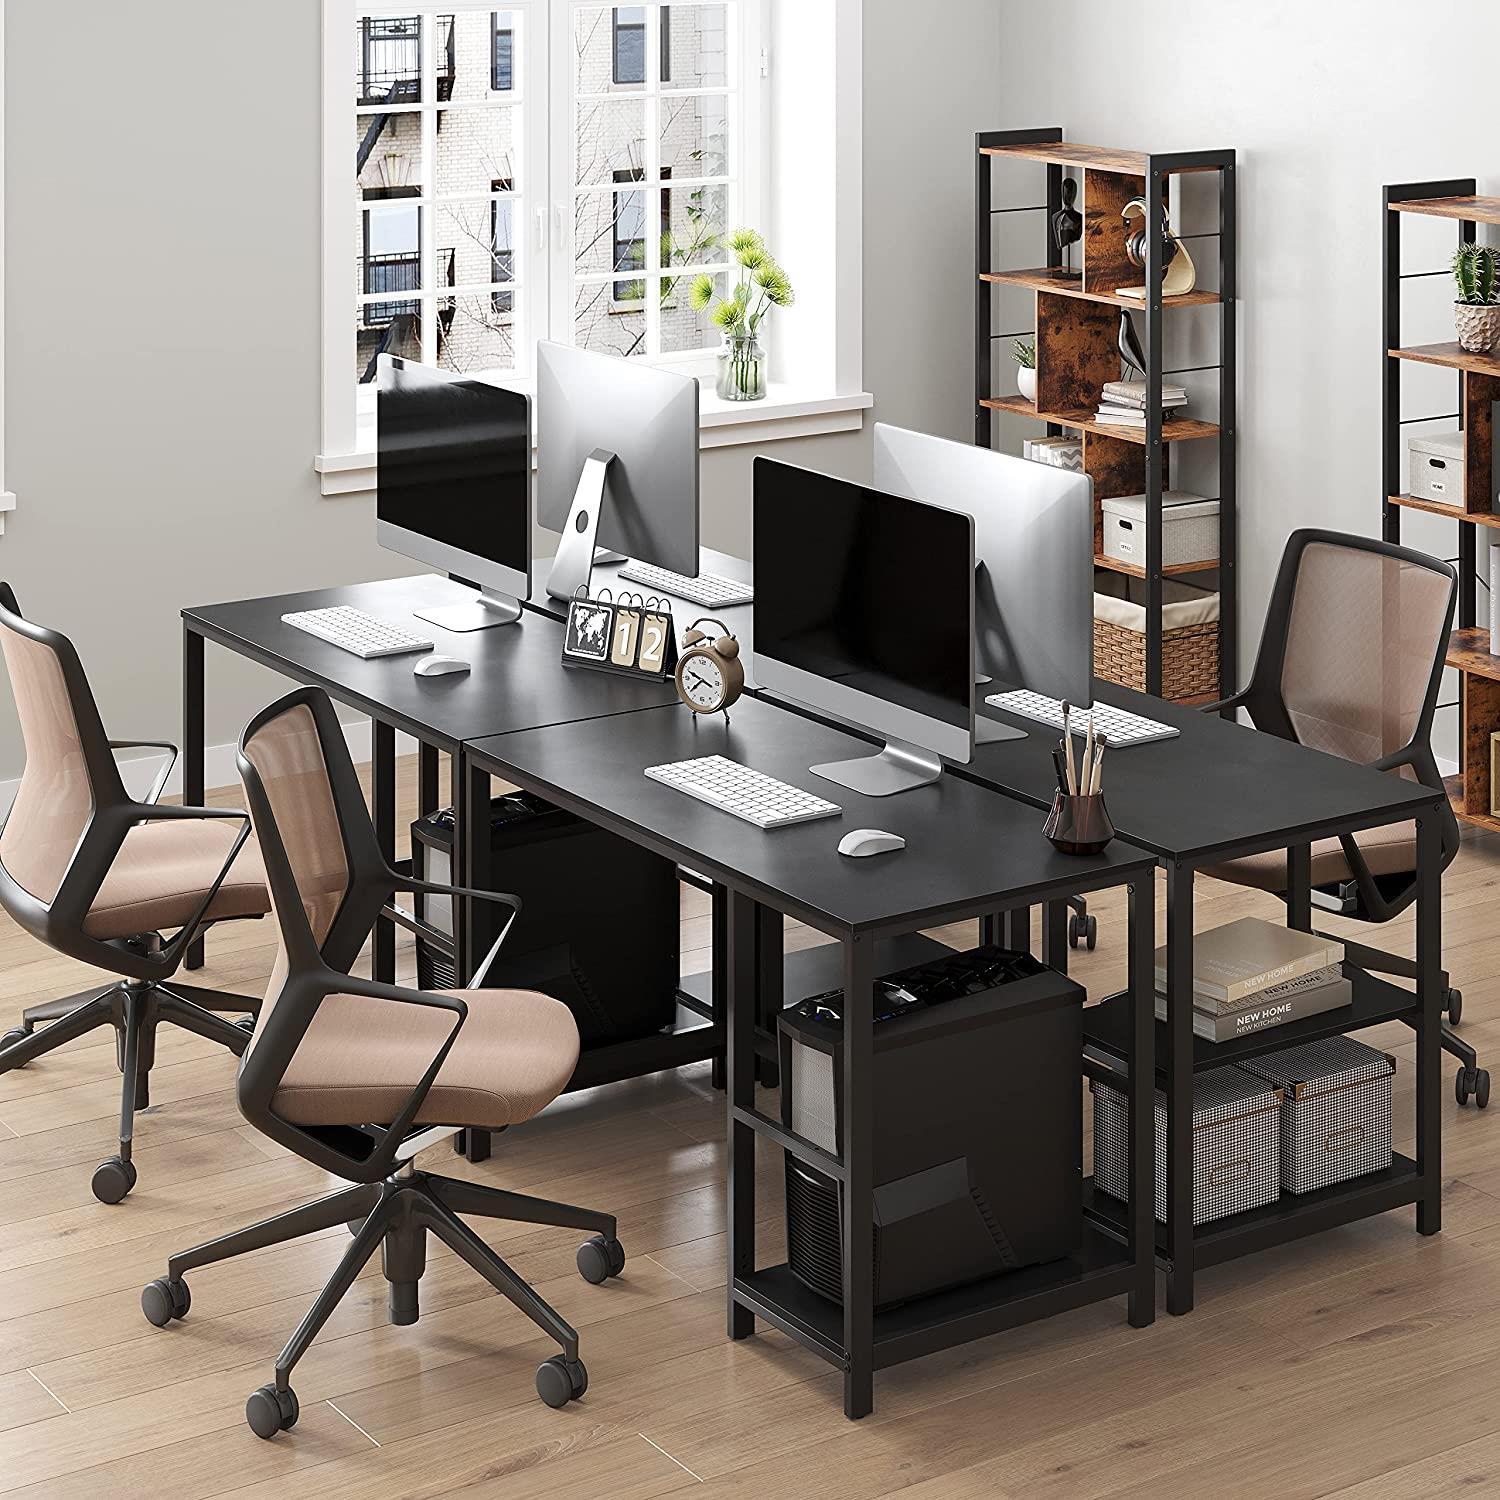 Mesa de ordenador ERGOS, moderno diseño, en metal y madera color Negro 